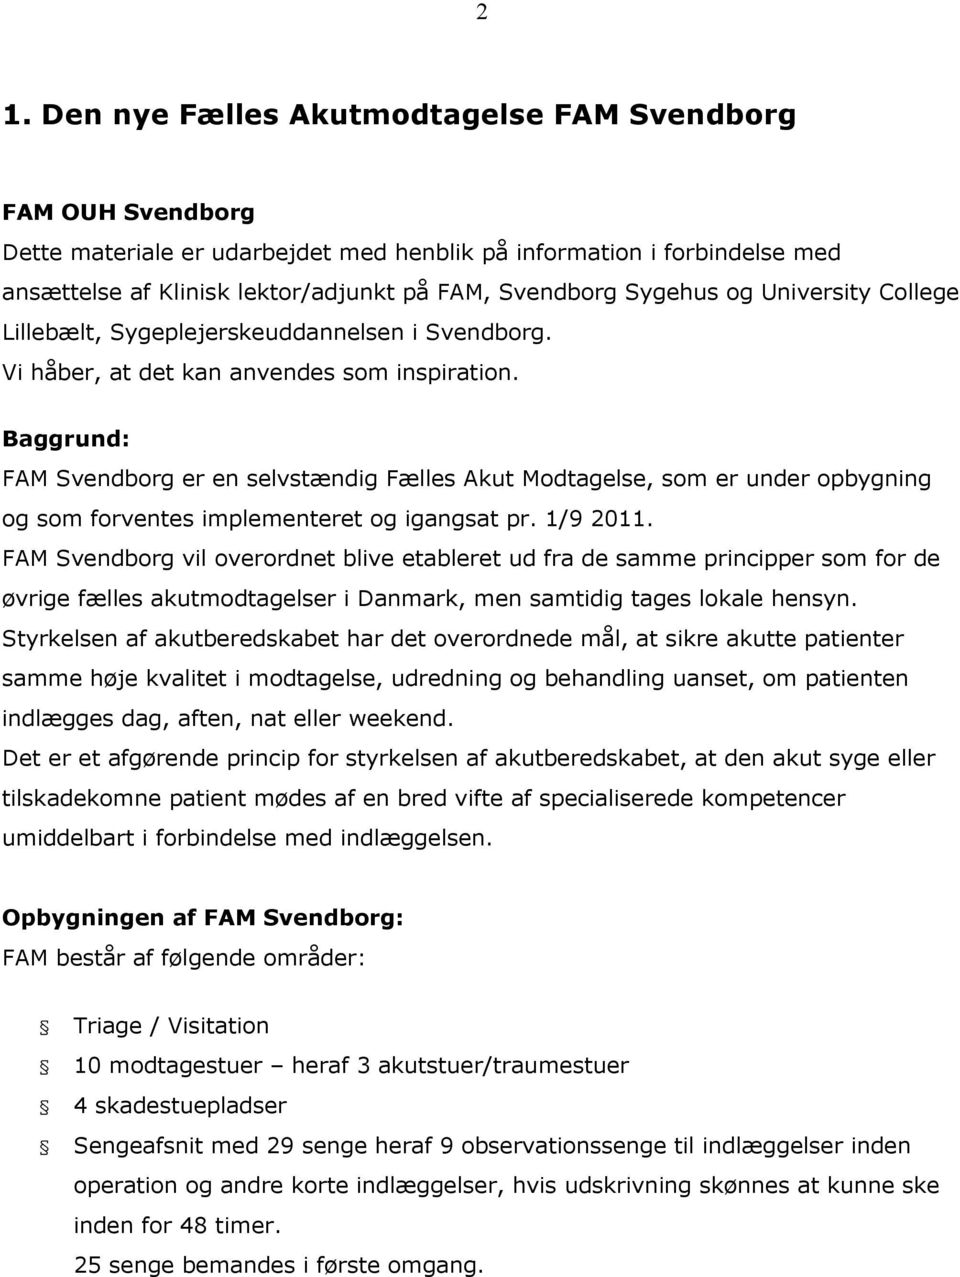 Baggrund: FAM Svendborg er en selvstændig Fælles Akut Modtagelse, som er under opbygning og som forventes implementeret og igangsat pr. 1/9 2011.